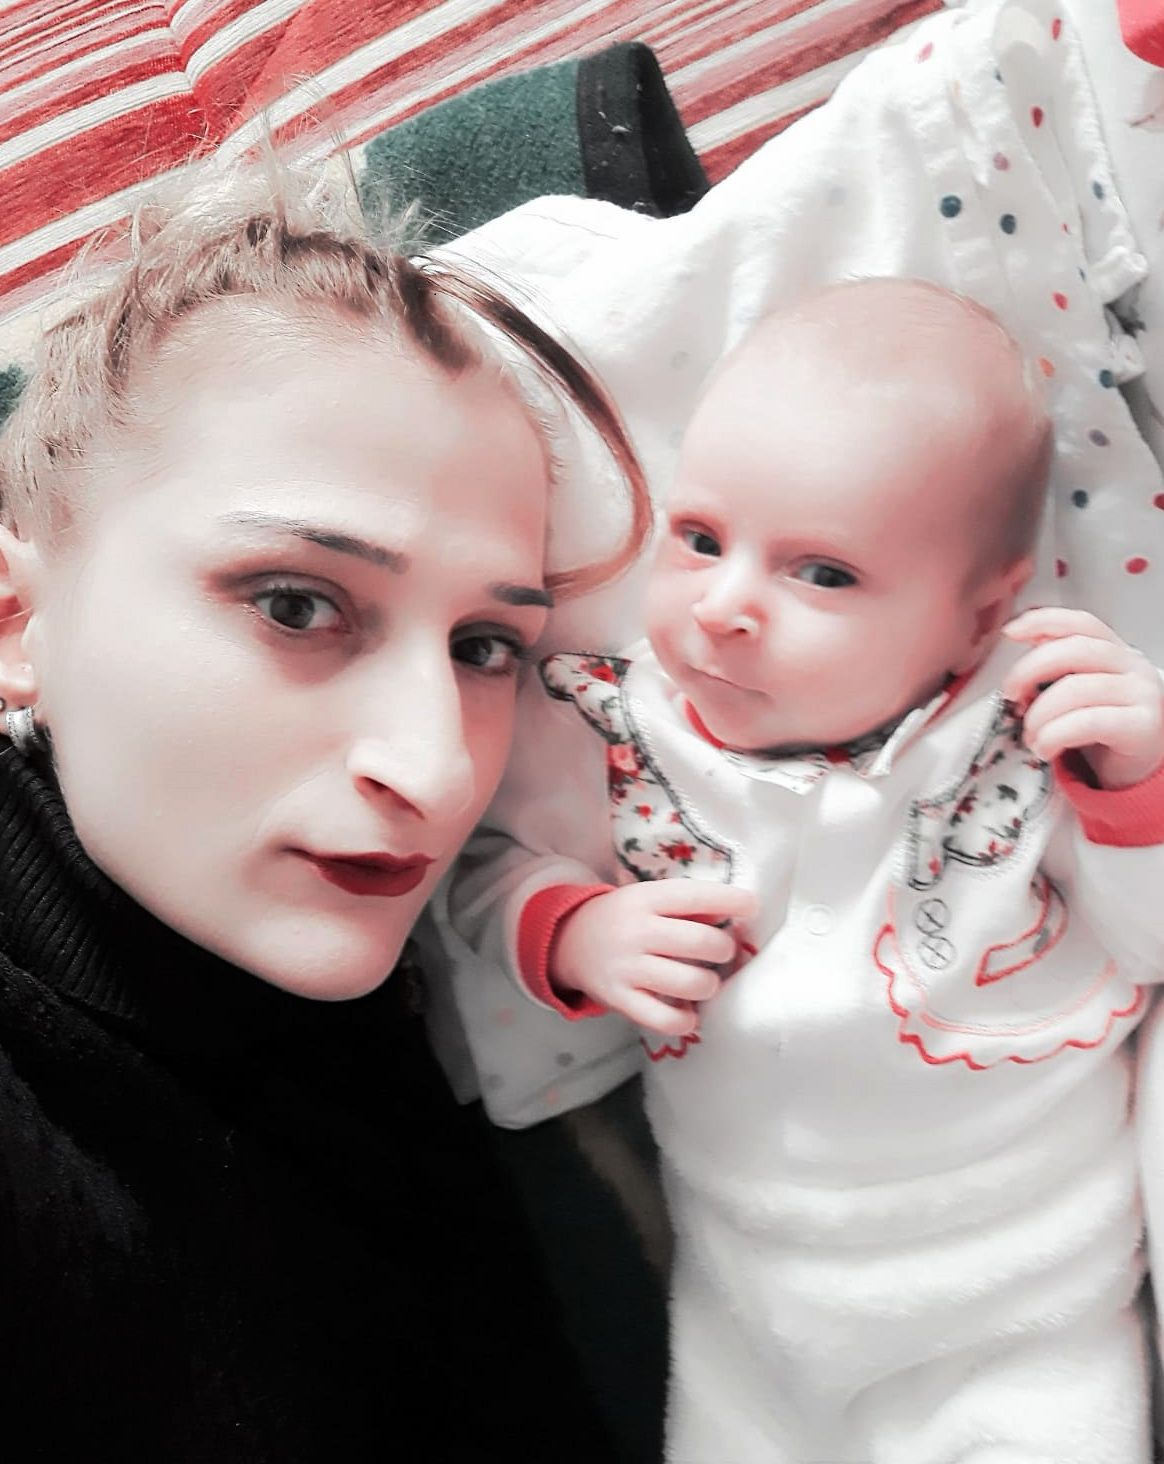 Antalya'da 3 aylık bebeğin ölümü şüpheli bulundu